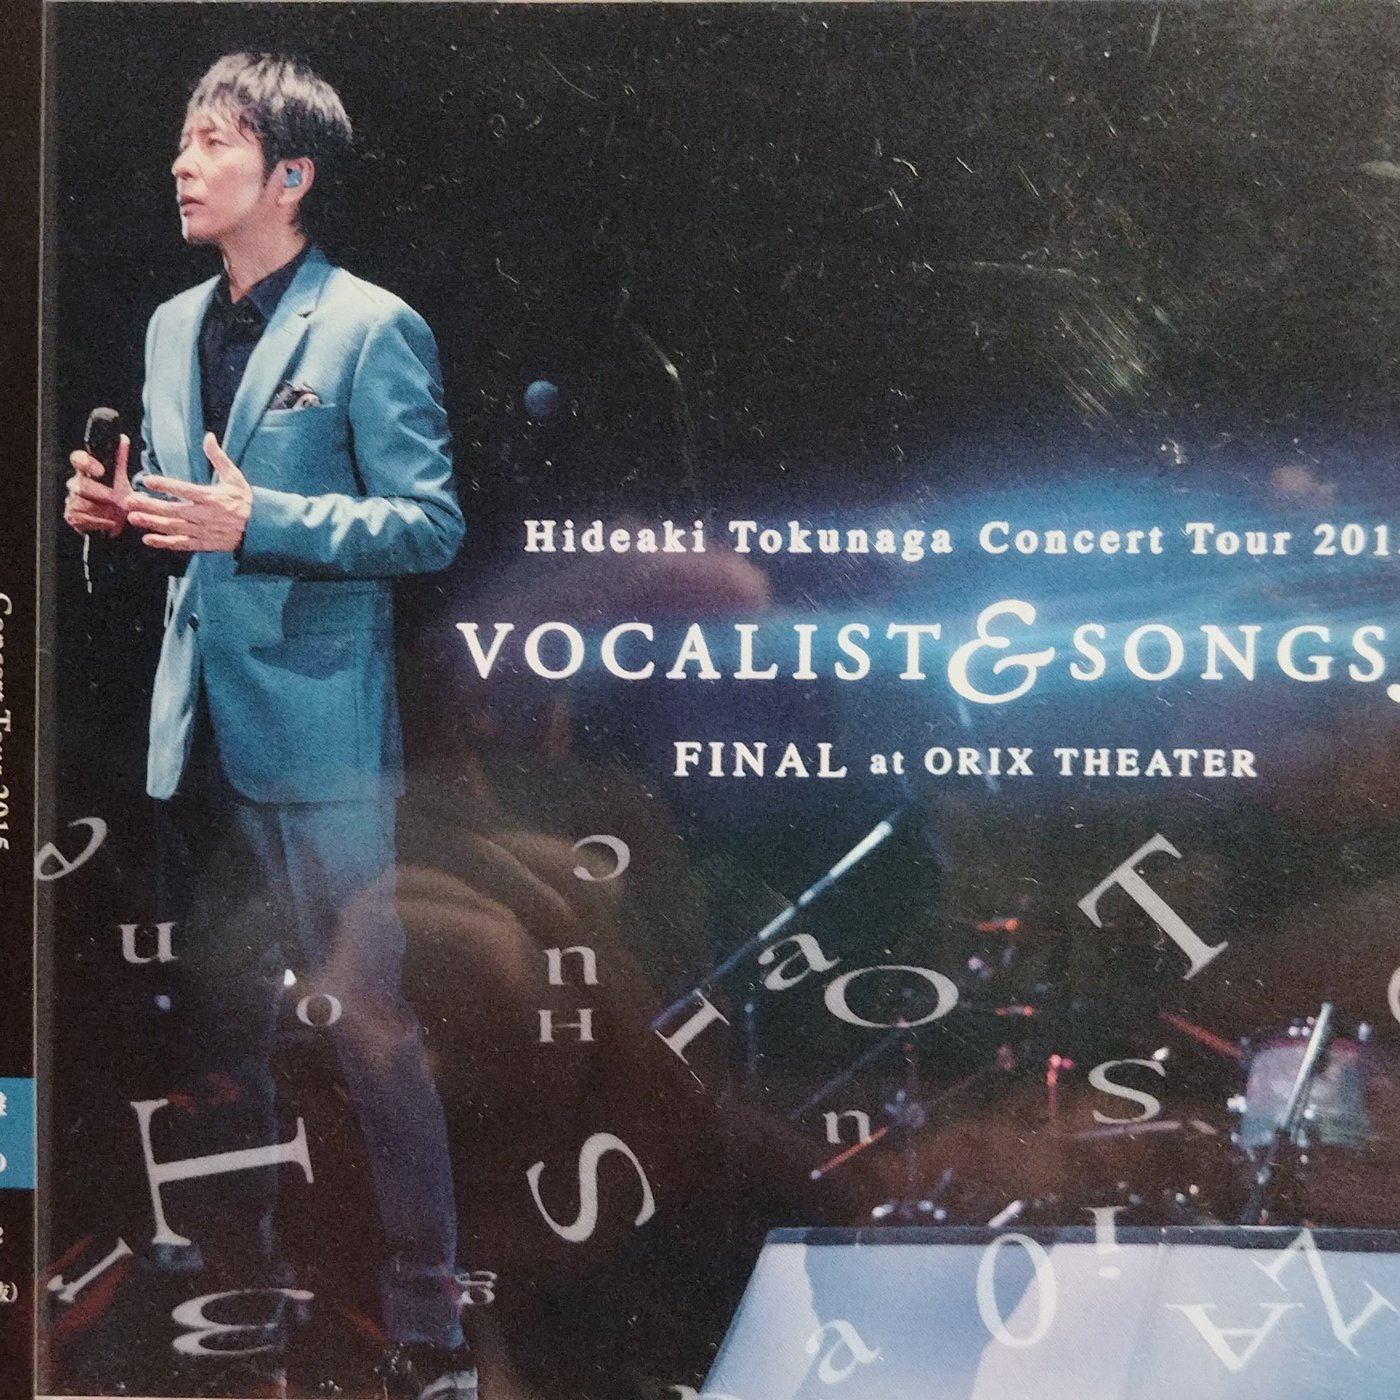 徳永英明 - Concert Tour 2015 VOCALIST & SONGS 3 FINAL (2CD+DVD)